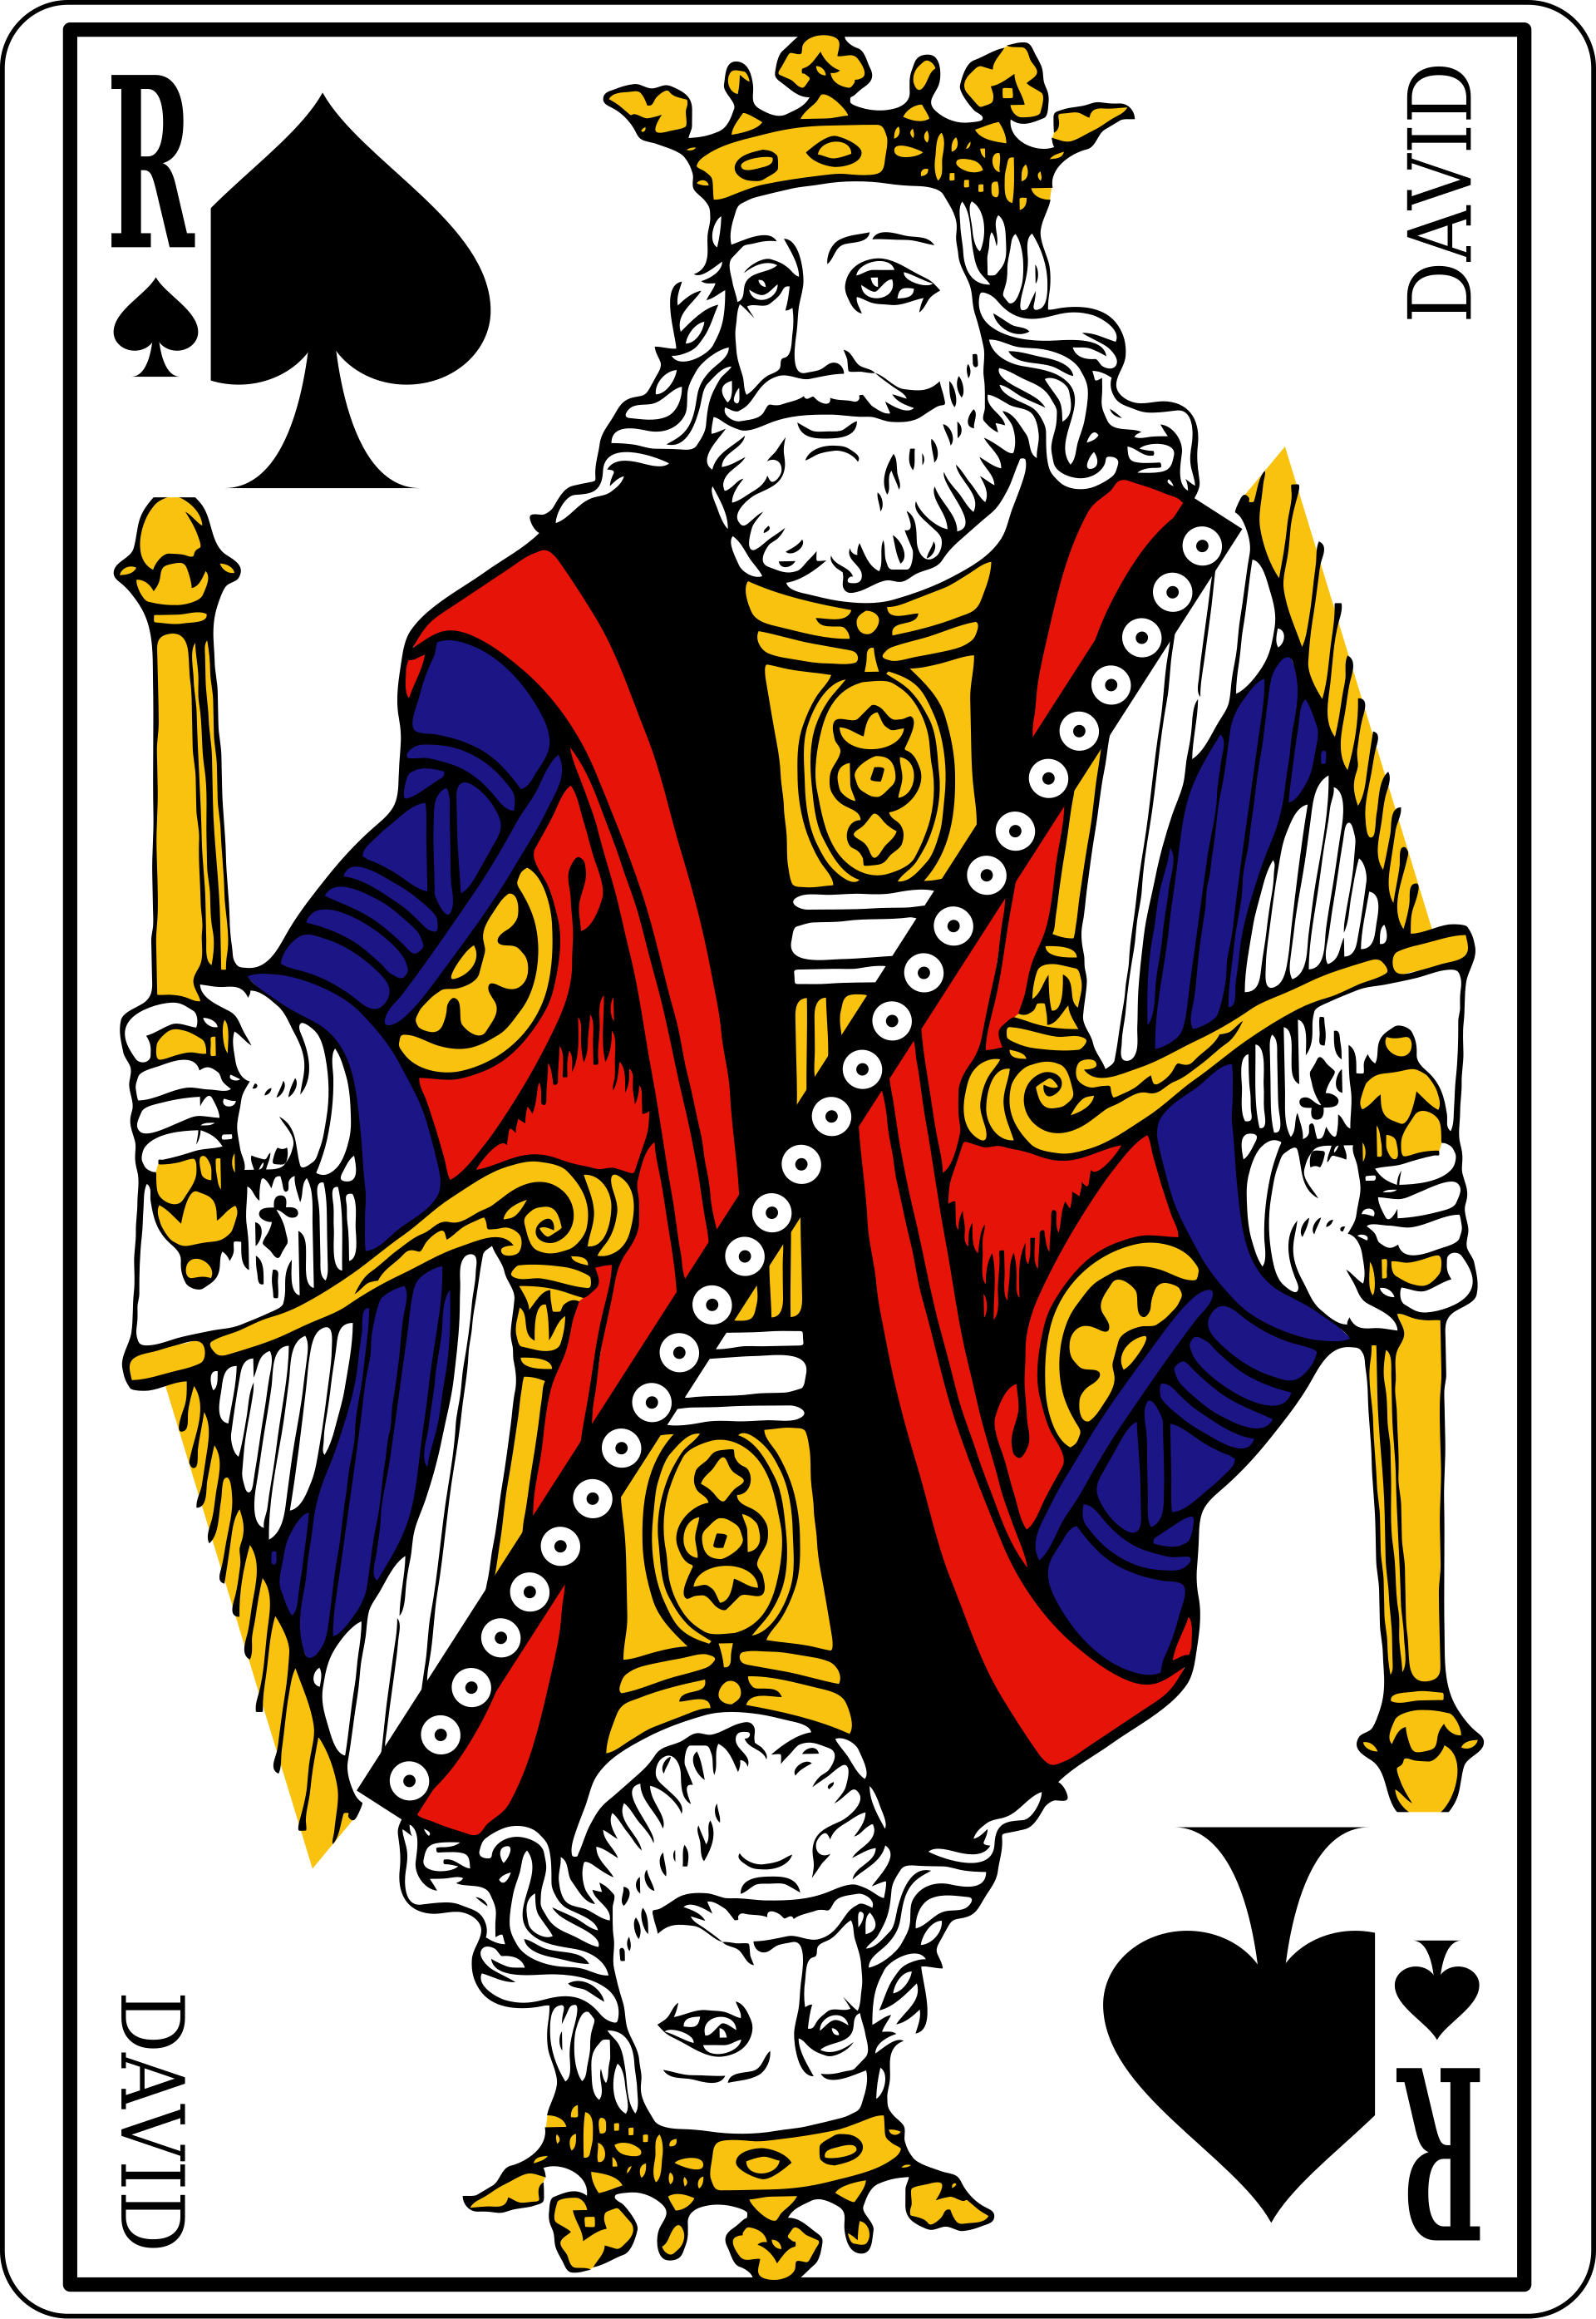 Rei (baralho) – Wikipédia, a enciclopédia livre